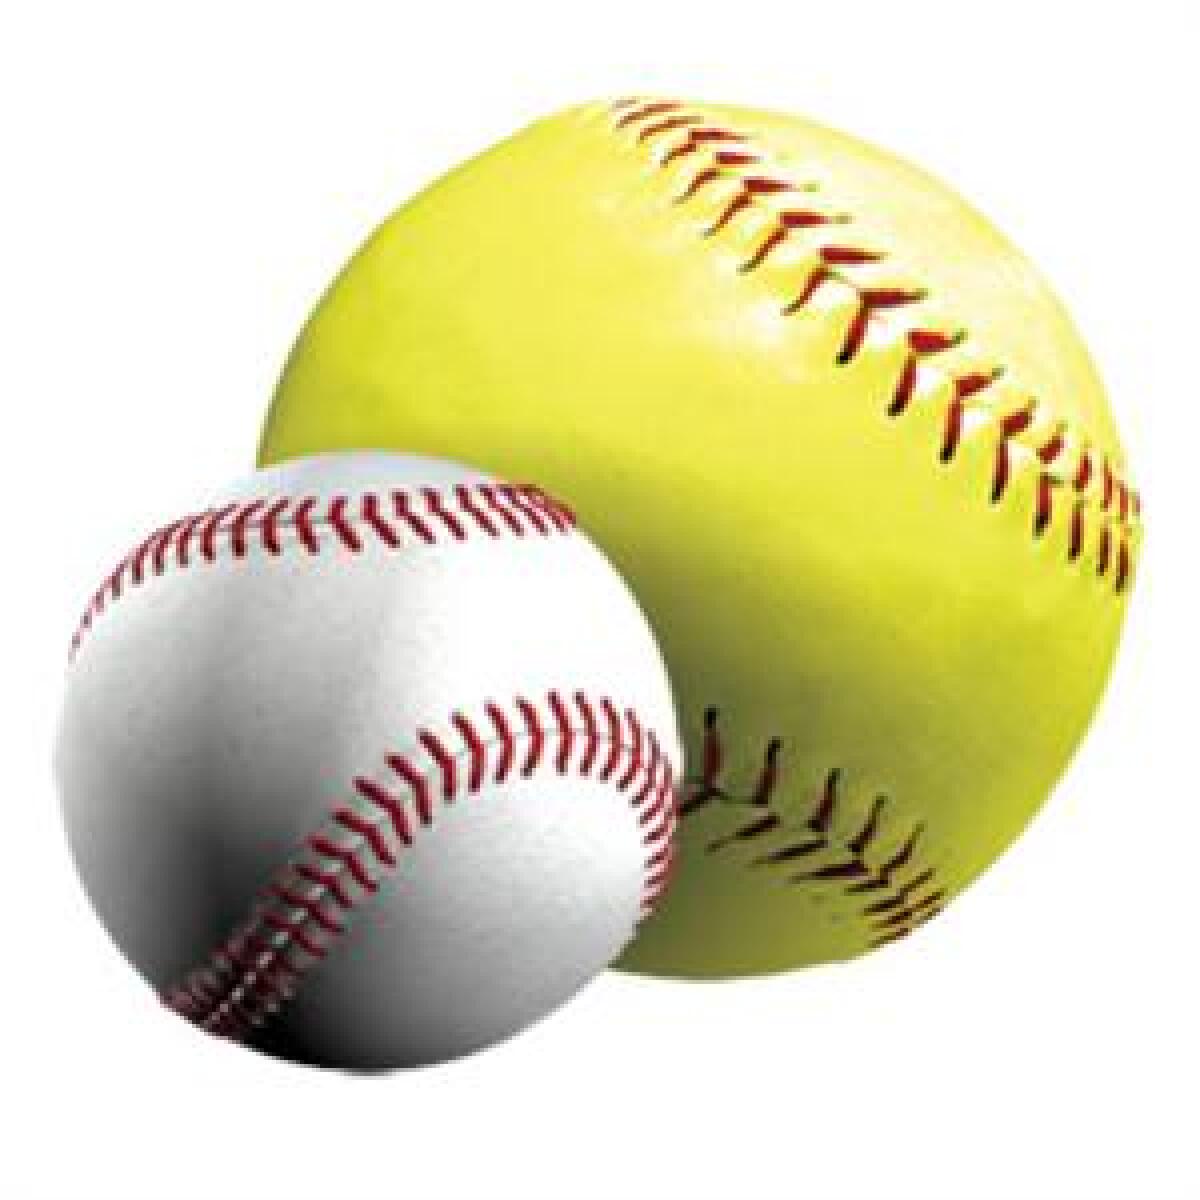 A softball and baseball